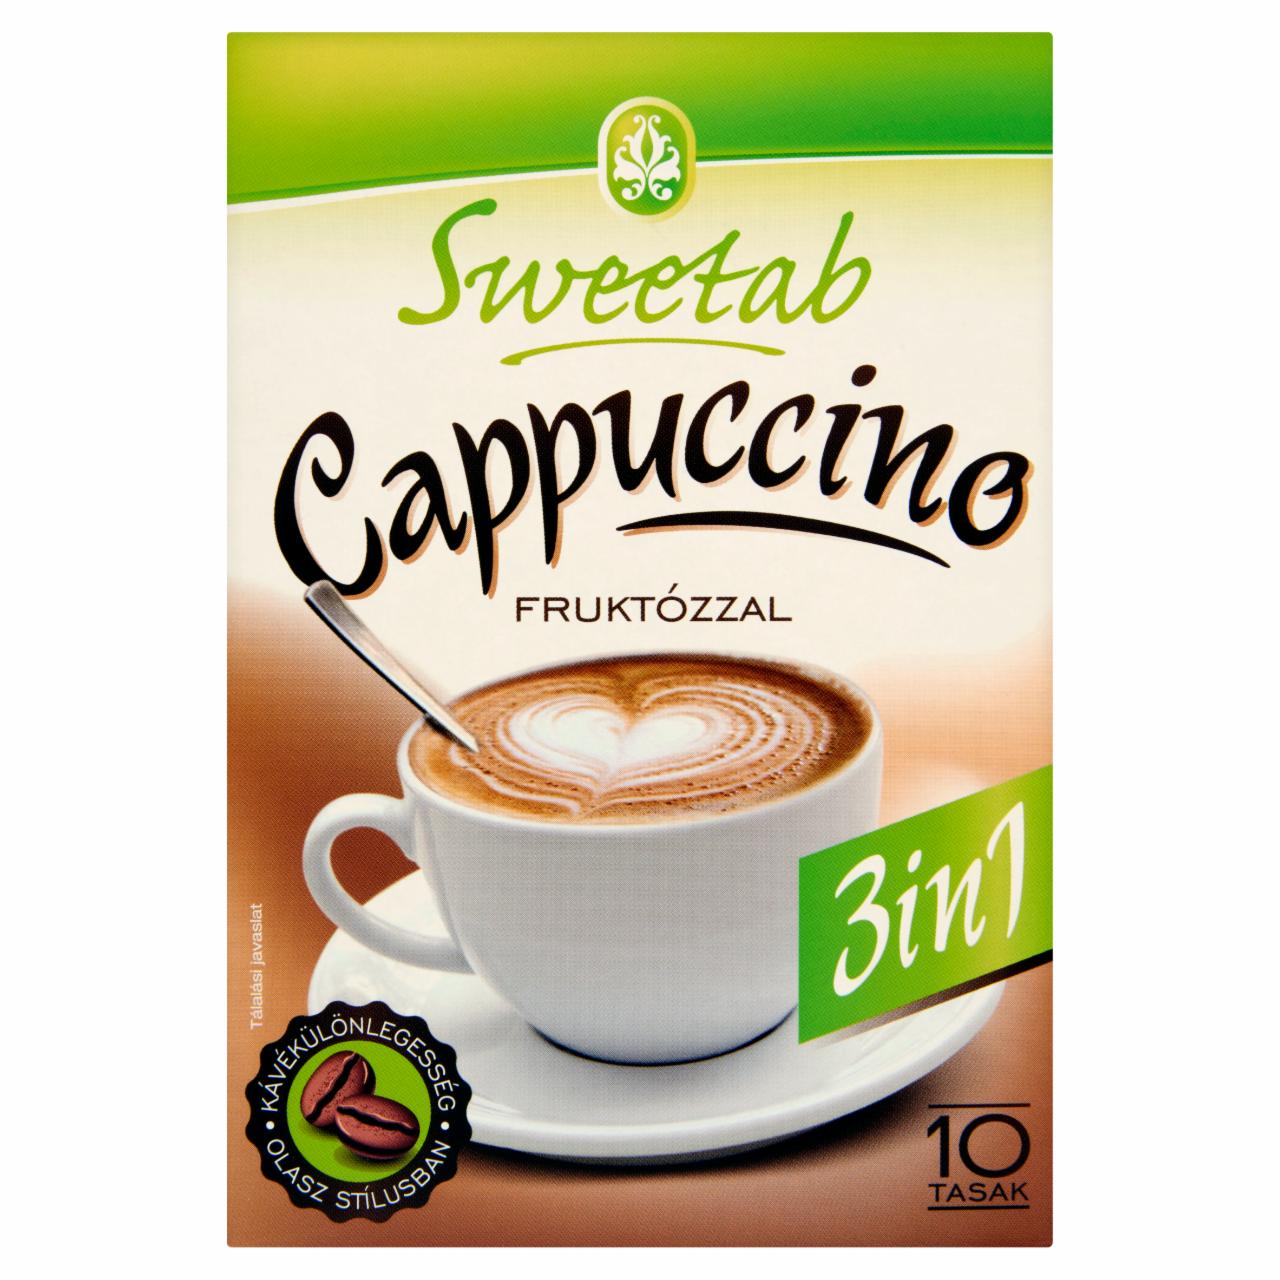 Képek - Sweetab Cappuccino 3 in 1 azonnal oldódó kávéspecialitás fruktózzal 10 db 100 g